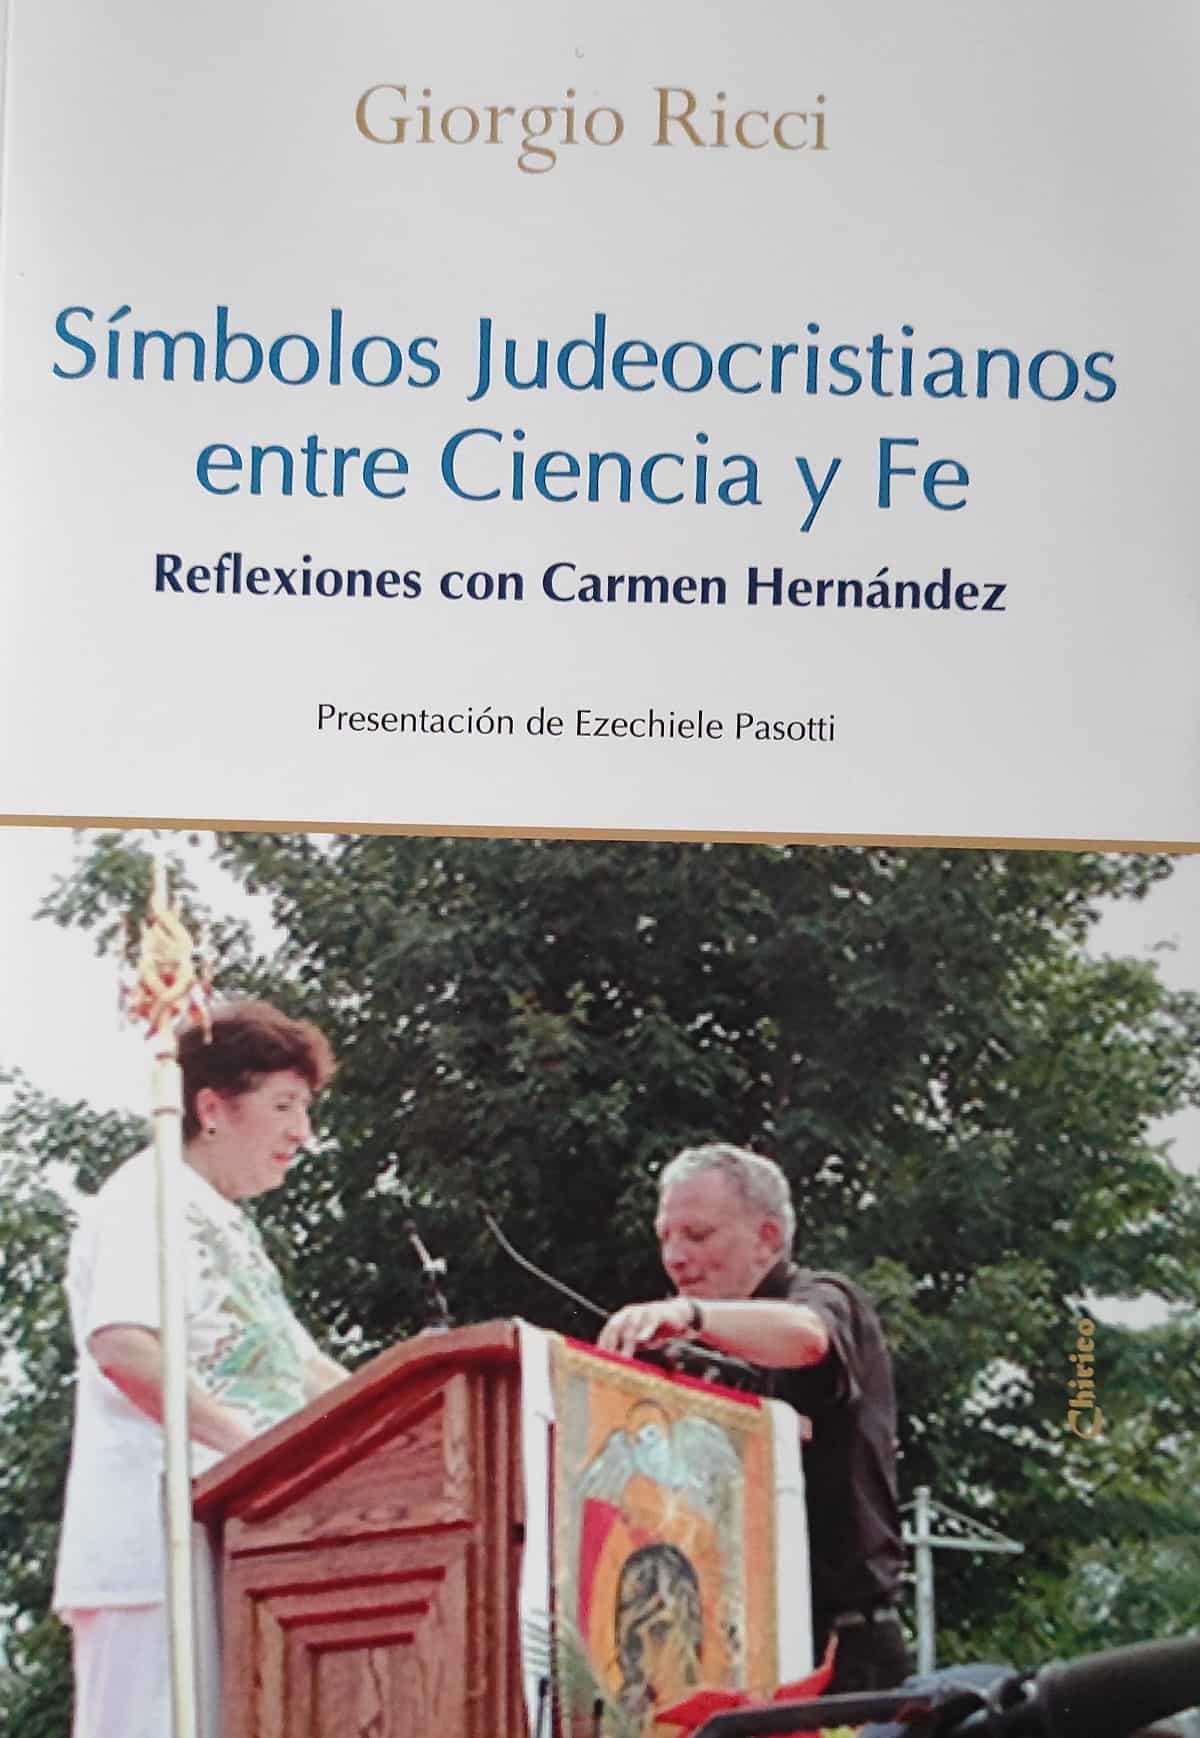 Portada del libro de Giorgio Ricci Símbolos Judeocristianos entre ciencia y fe, sobre Carmen Hernández